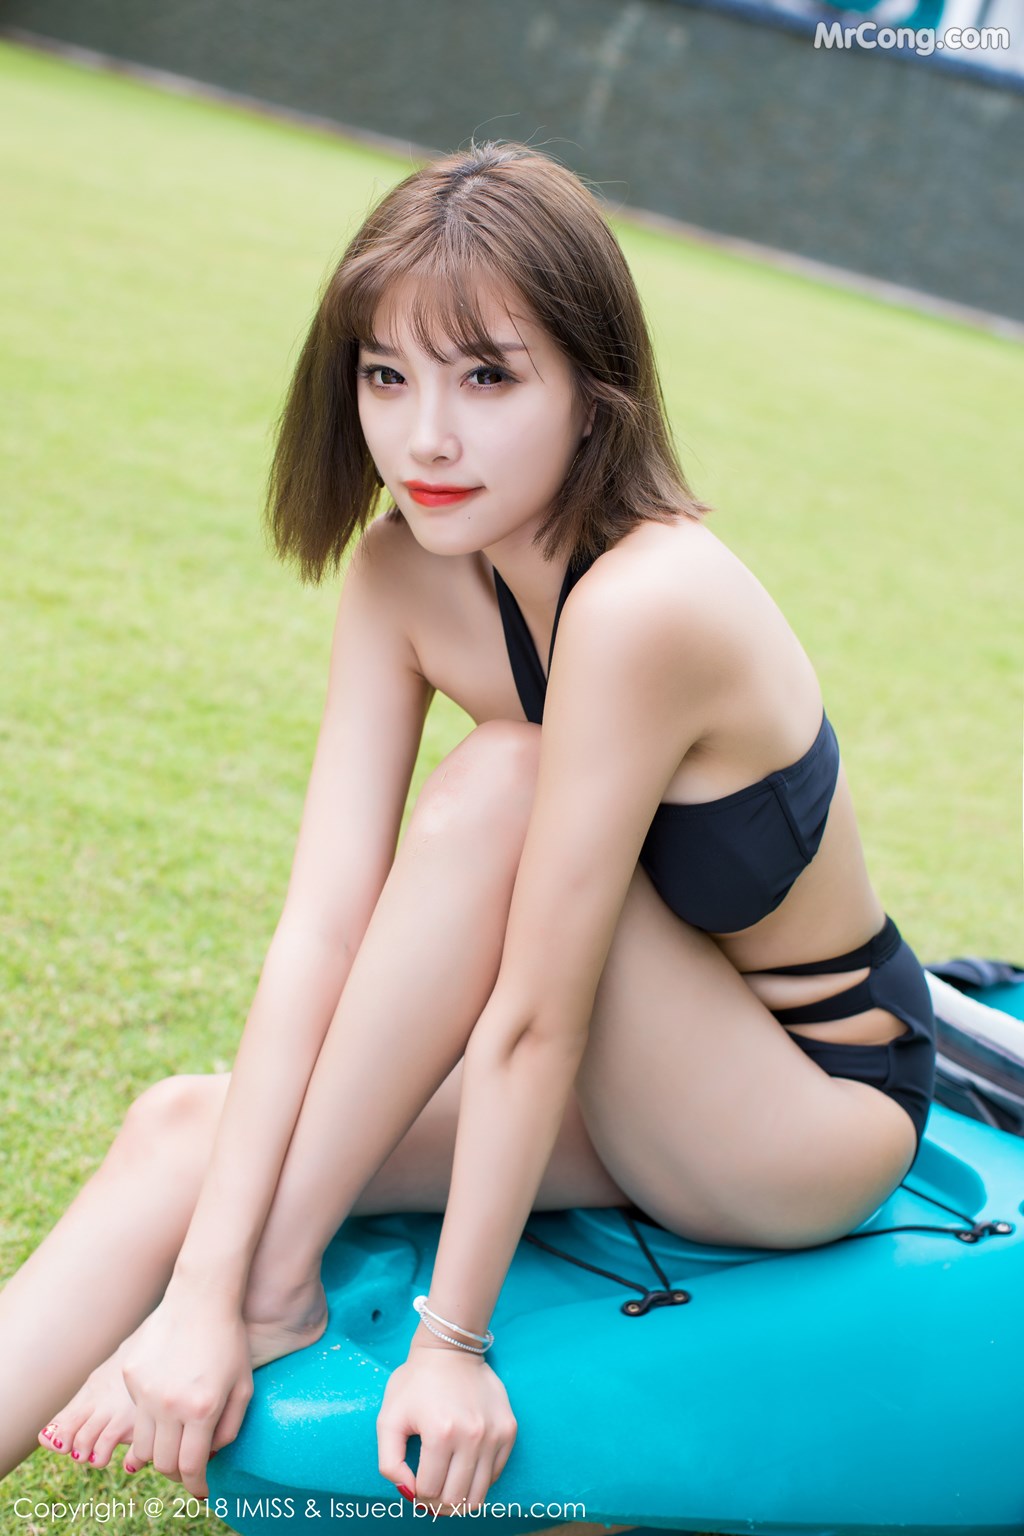 IMISS Vol. 220: Model Yang Chen Chen (杨晨晨 sugar) (37 photos) photo 1-12